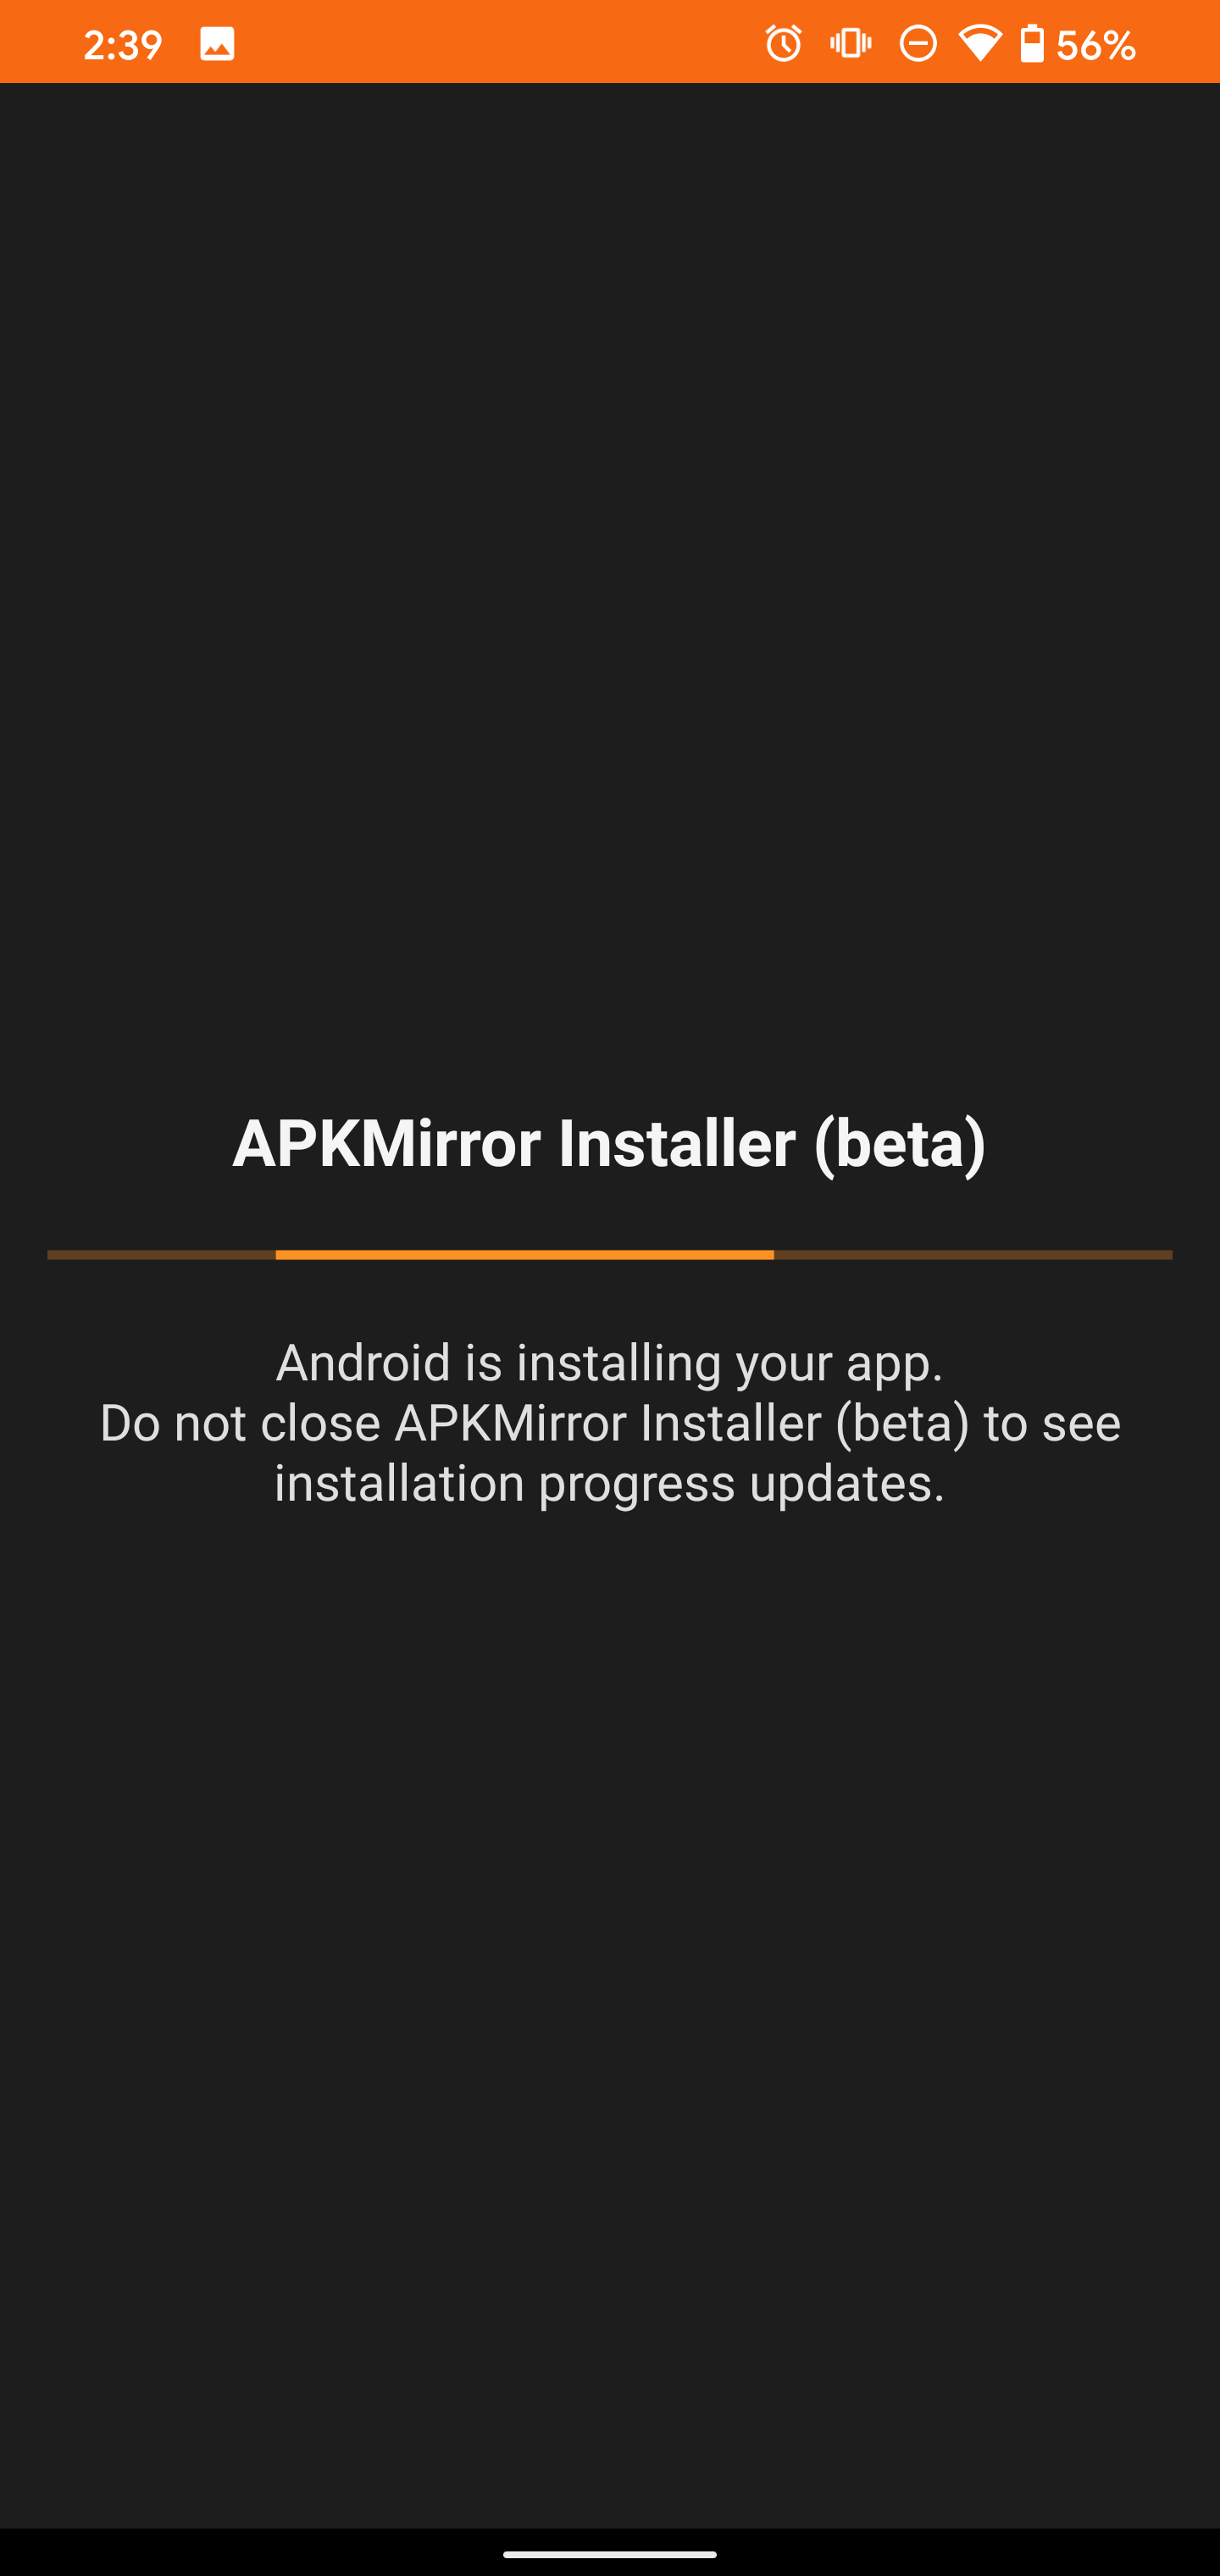 Screenshot of APK Mirror Installer app installation progress bar